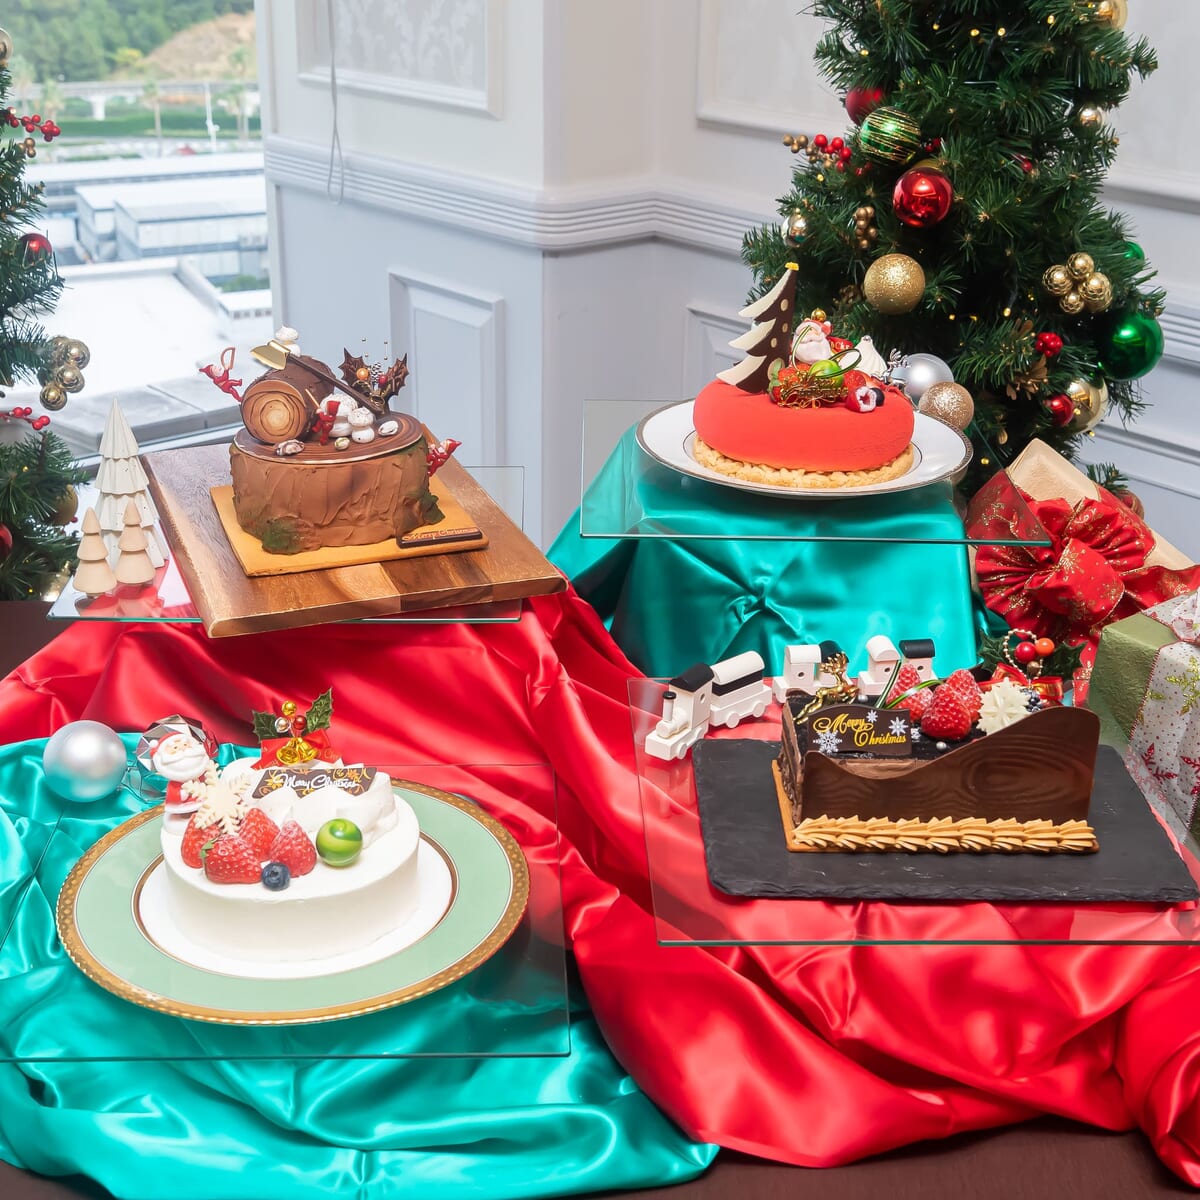 シェラトン・グランデ・トーキョーベイ・ホテル「トスティーナ」2022年 シェラトン クリスマスケーキコレクション 撮影画像